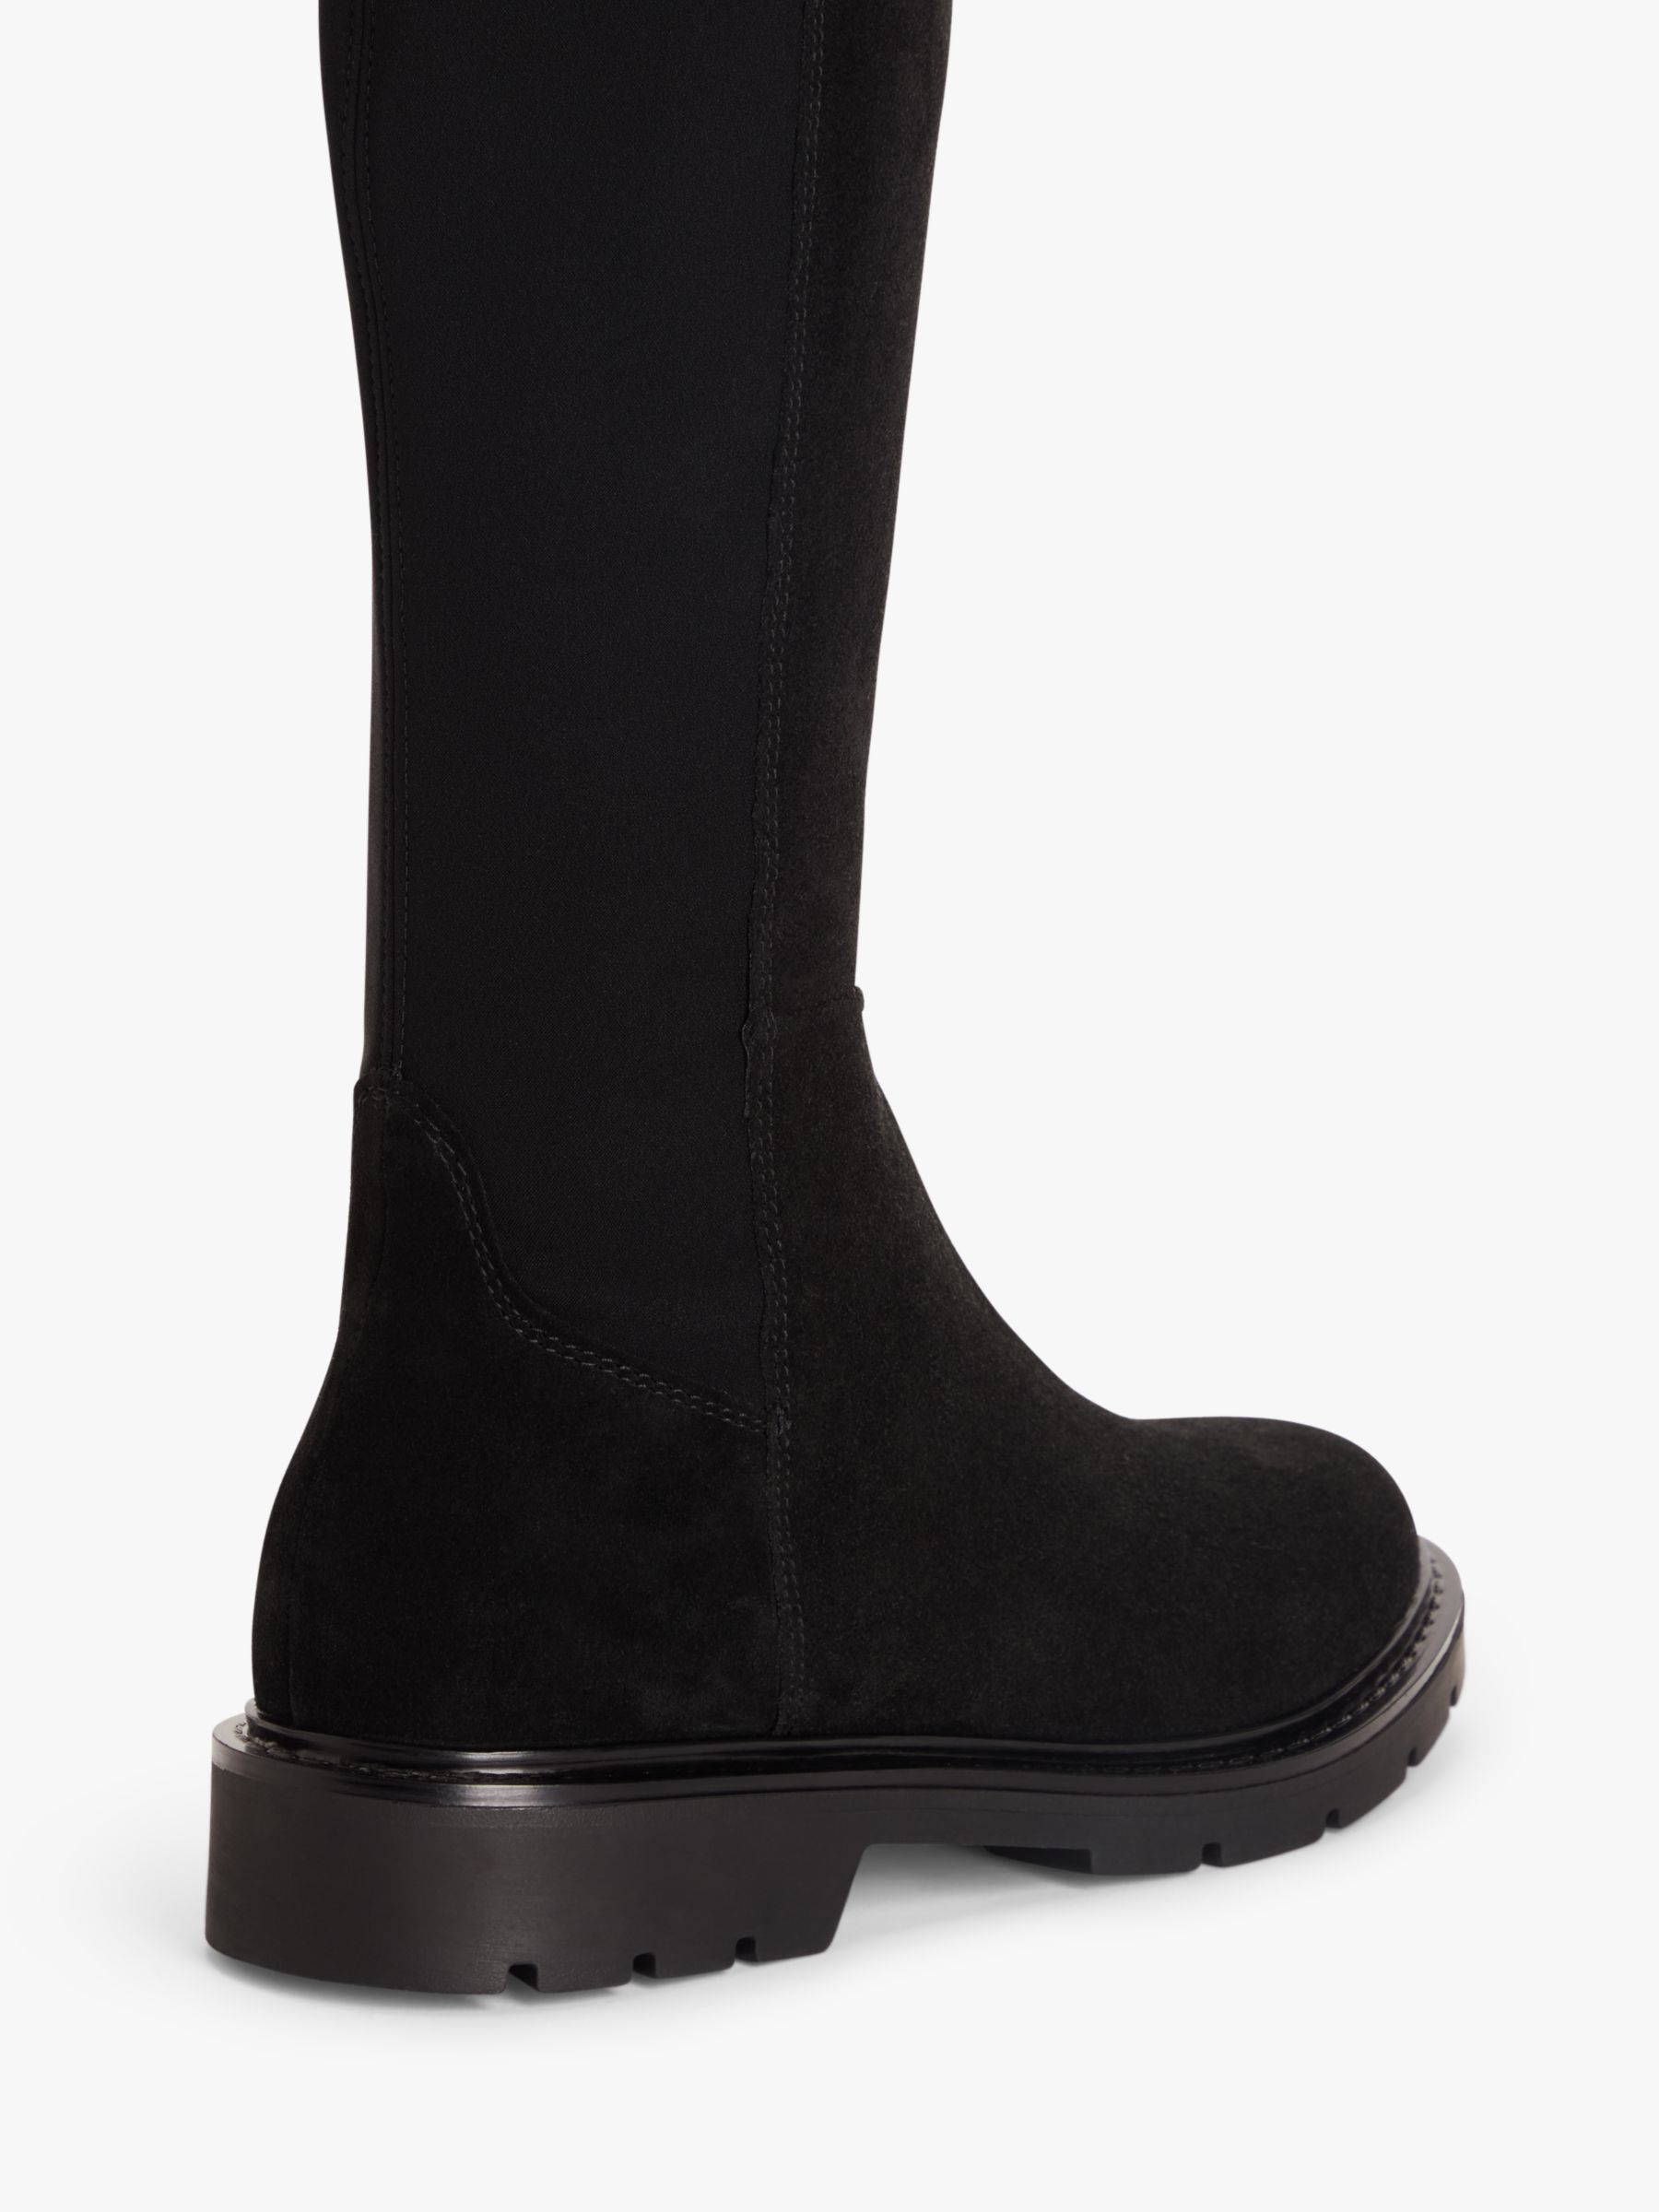 Buy John Lewis Tilda 2 Suede Over The Knee Boots, Black Online at johnlewis.com